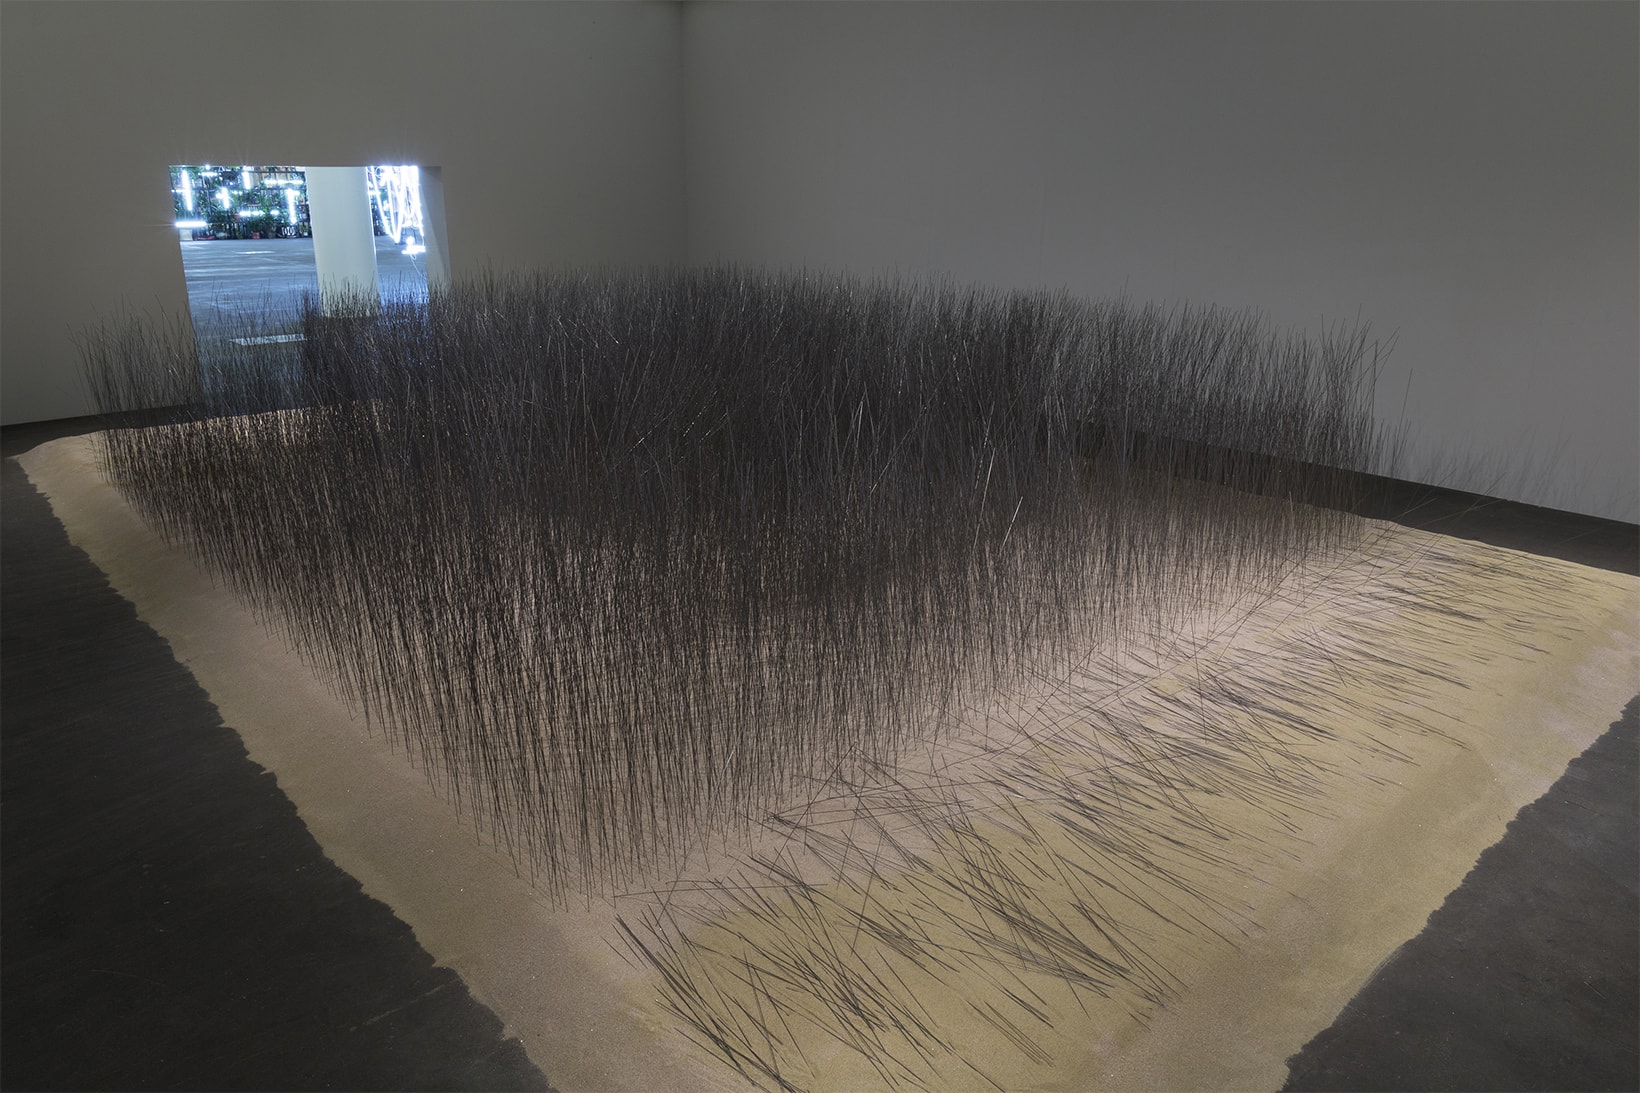 韓國藝術家 Lee Ufan 於 Art Basel 展出大型裝置藝術「Iron Field」